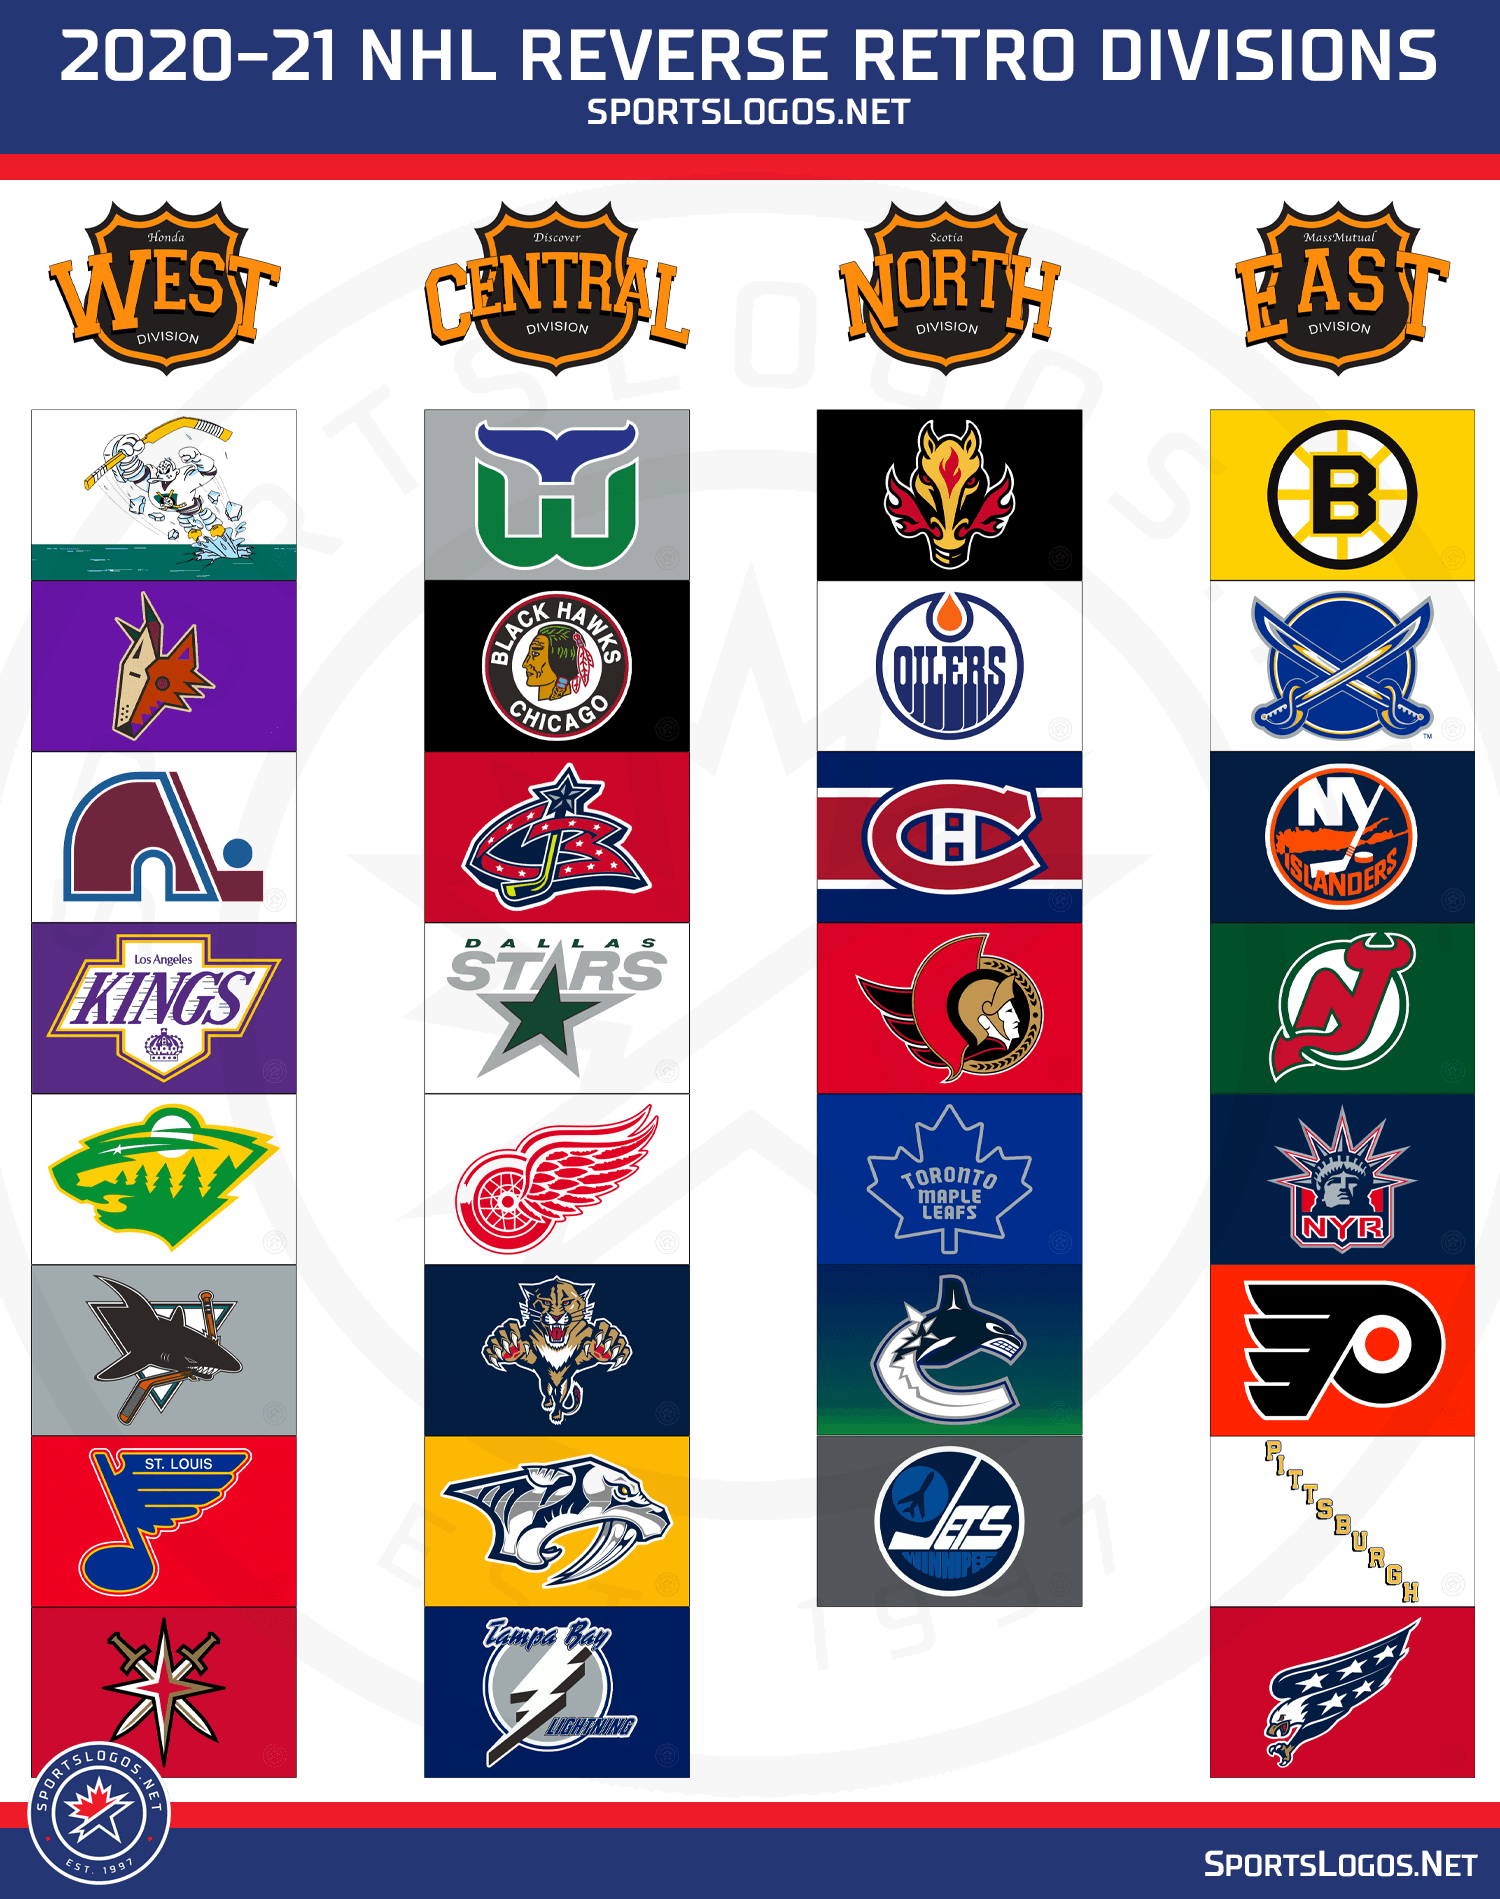 Chris Creamer  SportsLogos.Net on X: Here's all 32 NHL Reverse